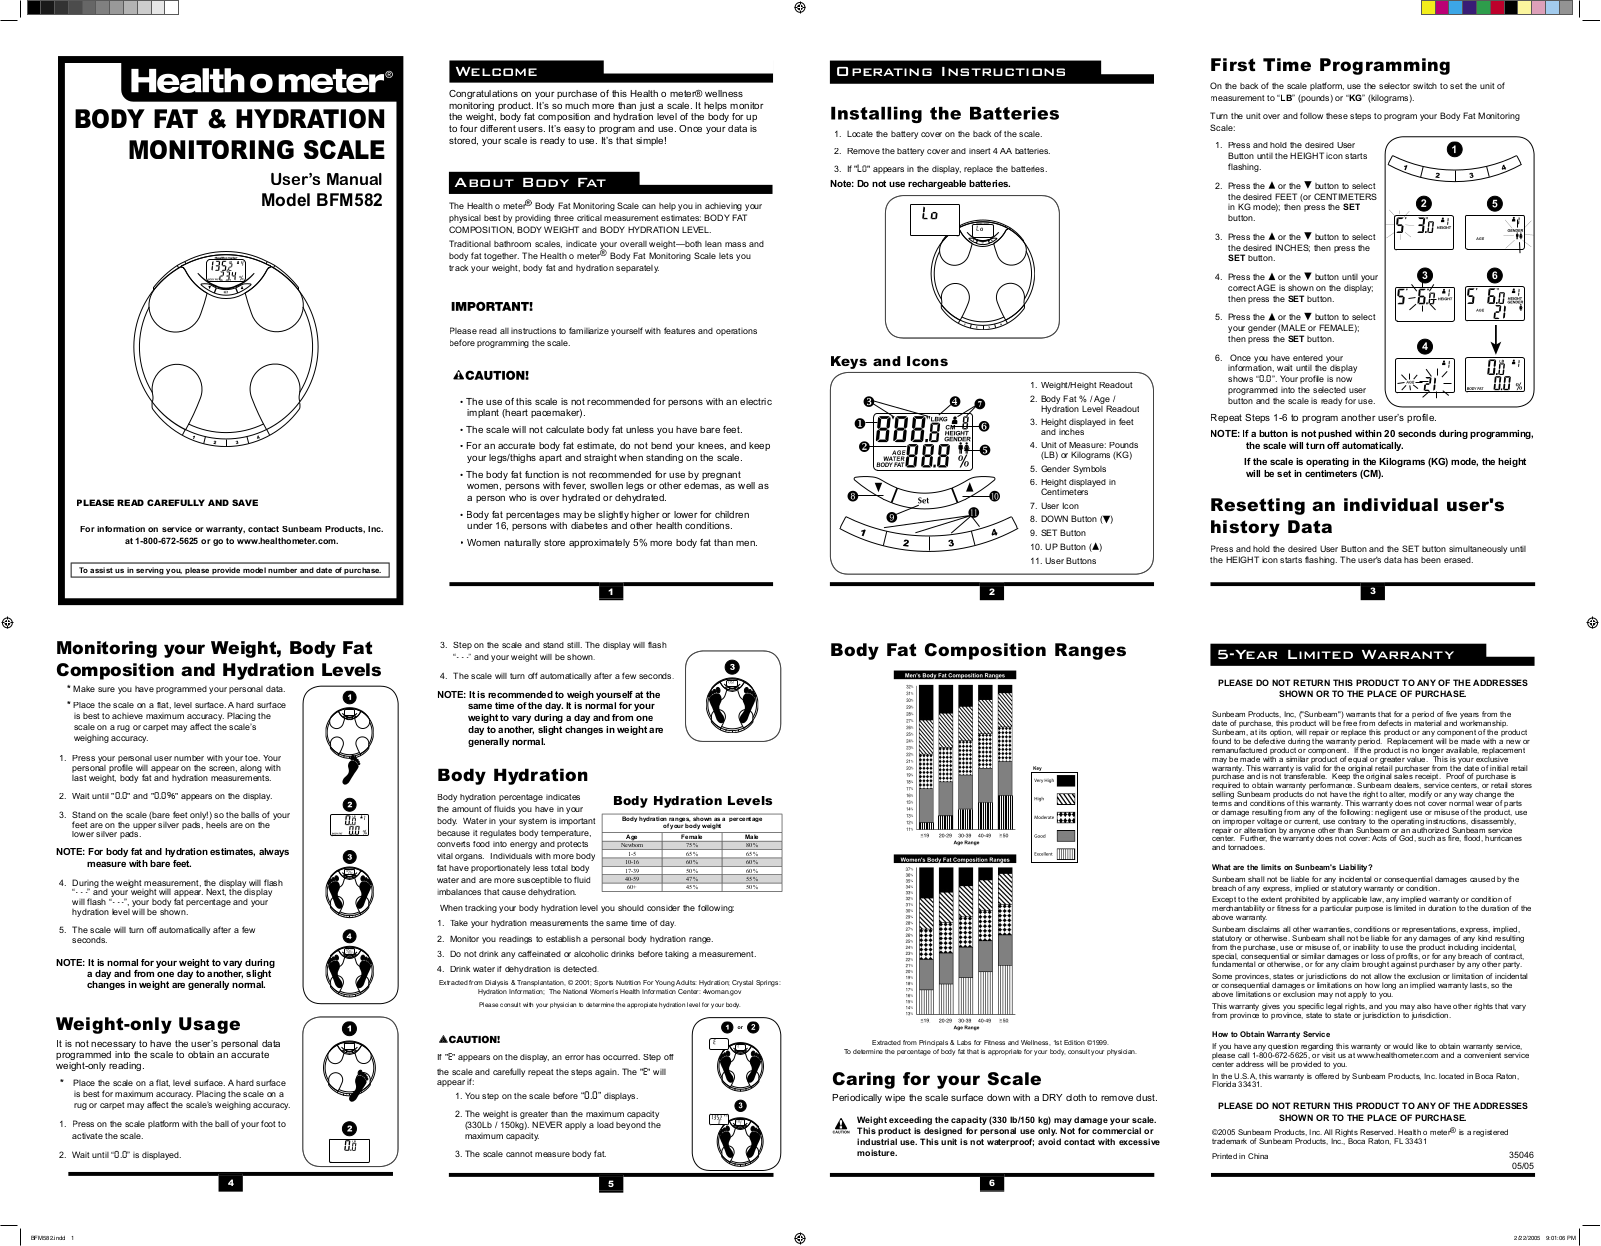 Health o meter BFM582-63 Owner's Manual